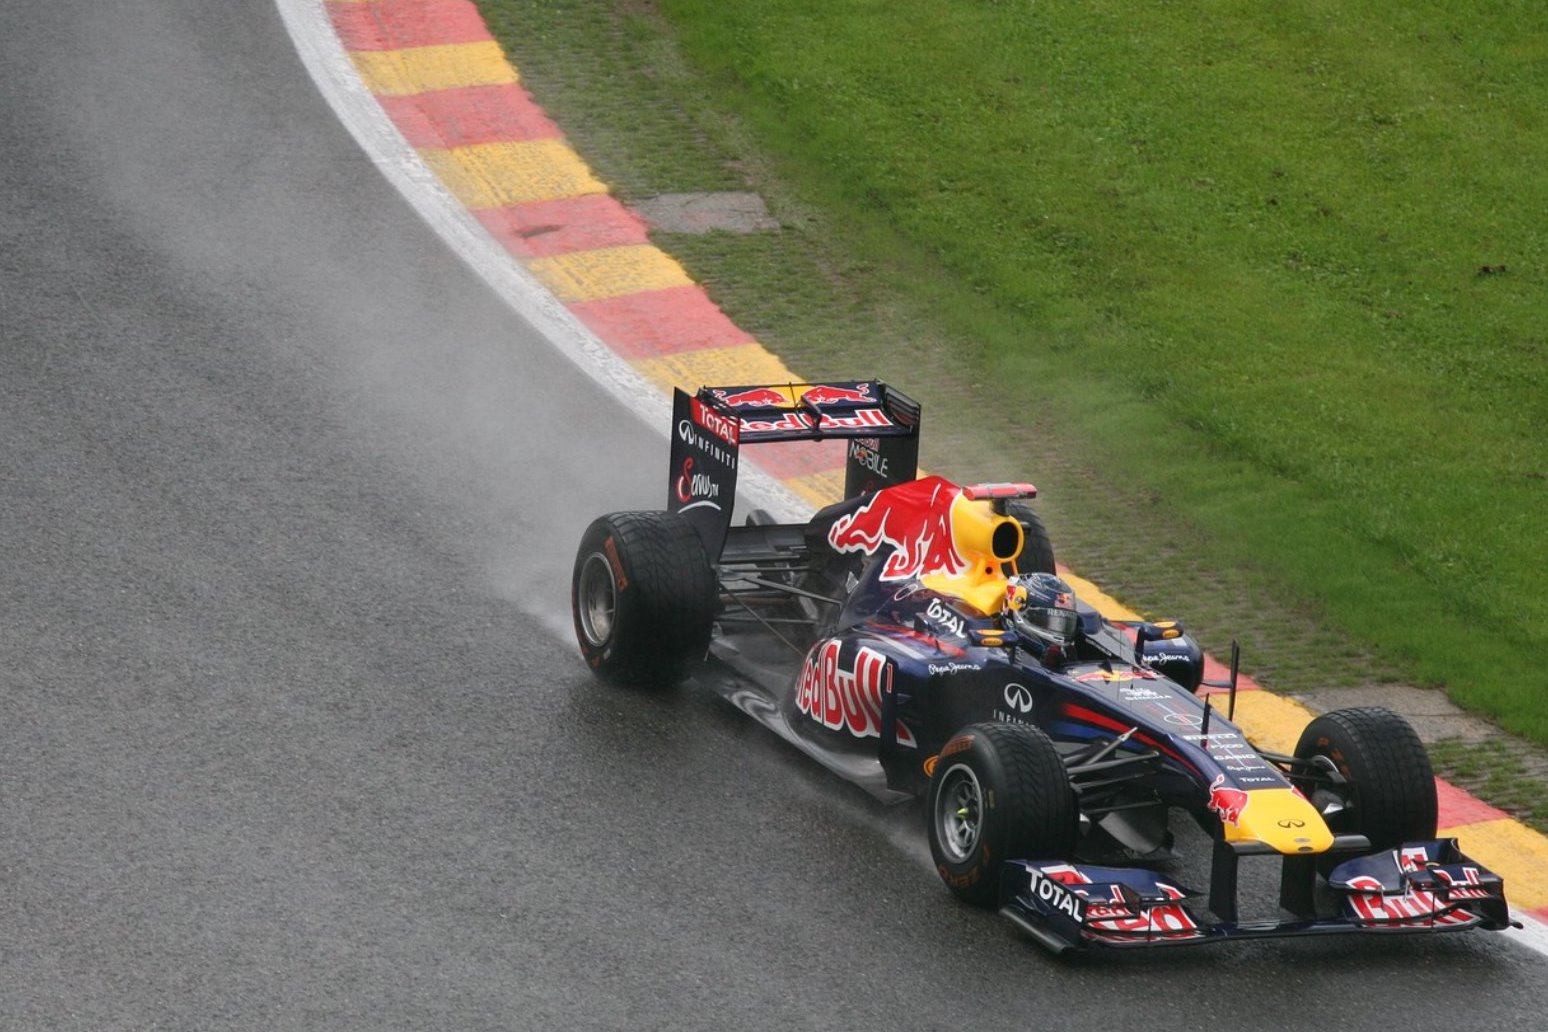 Ricciardo takes pole in Monte Carlo with lap record 